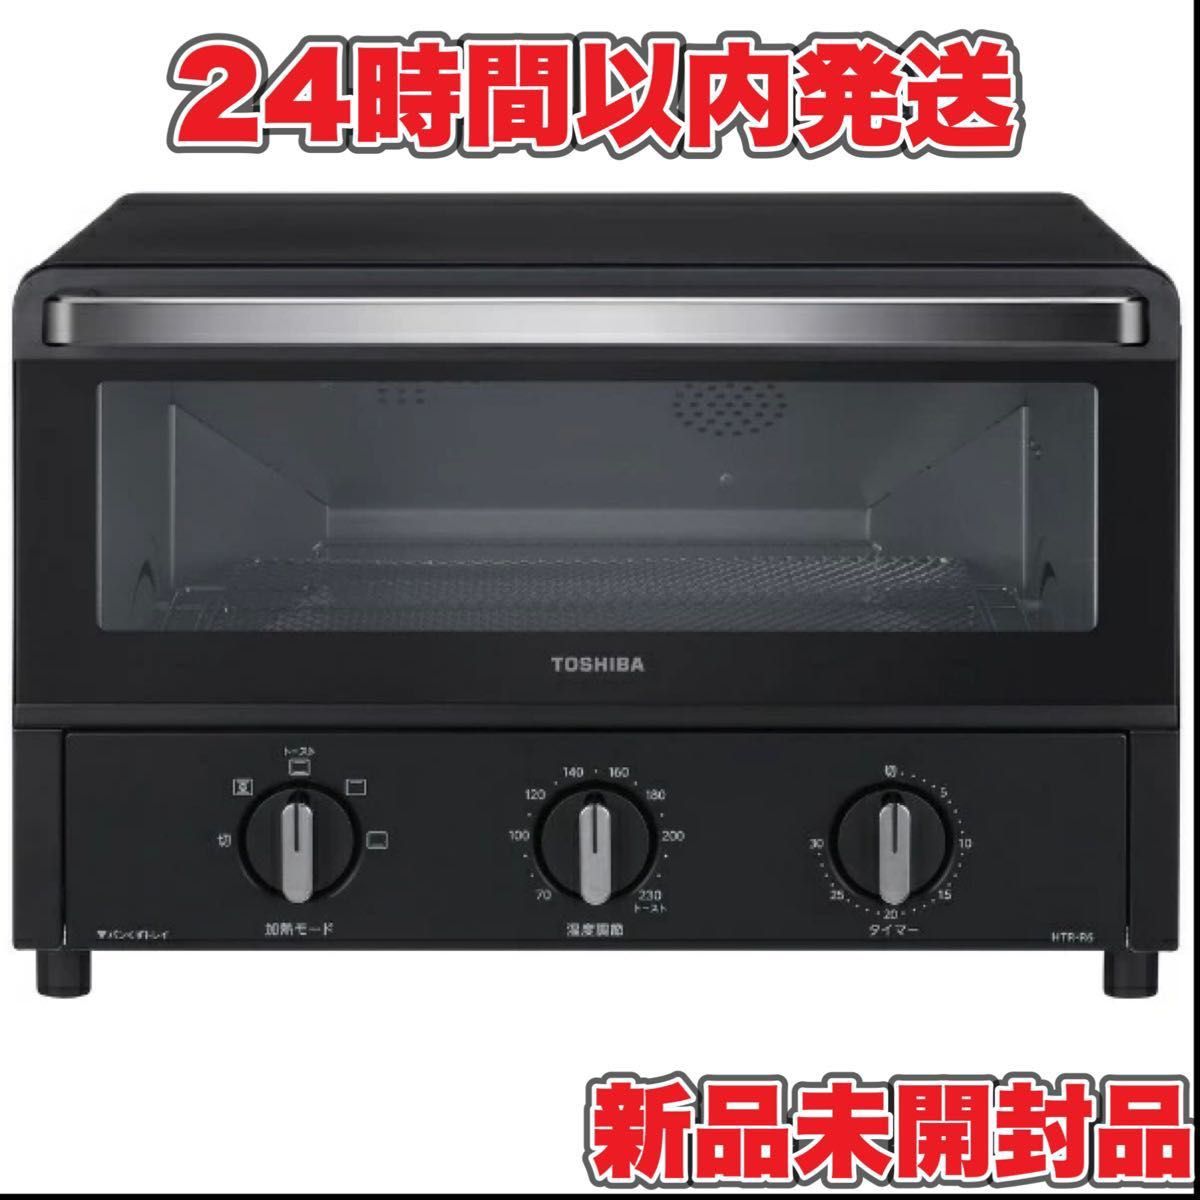 【新品未開封品】東芝 コンベクションオーブントースター ブラック HTR-R6-K